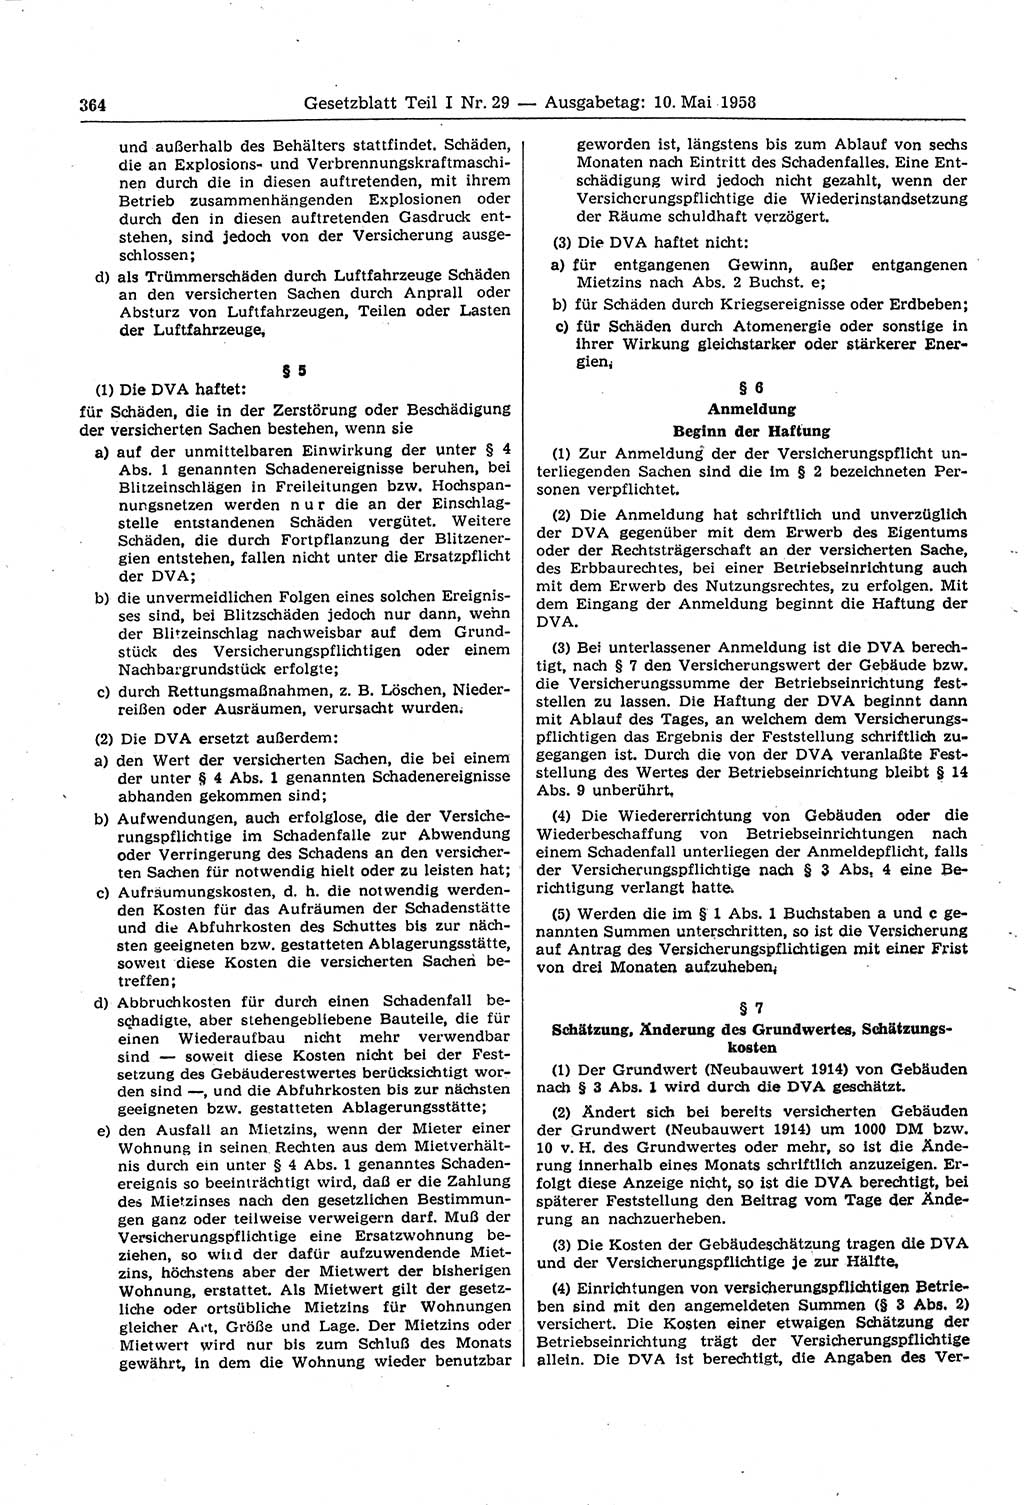 Gesetzblatt (GBl.) der Deutschen Demokratischen Republik (DDR) Teil Ⅰ 1958, Seite 364 (GBl. DDR Ⅰ 1958, S. 364)